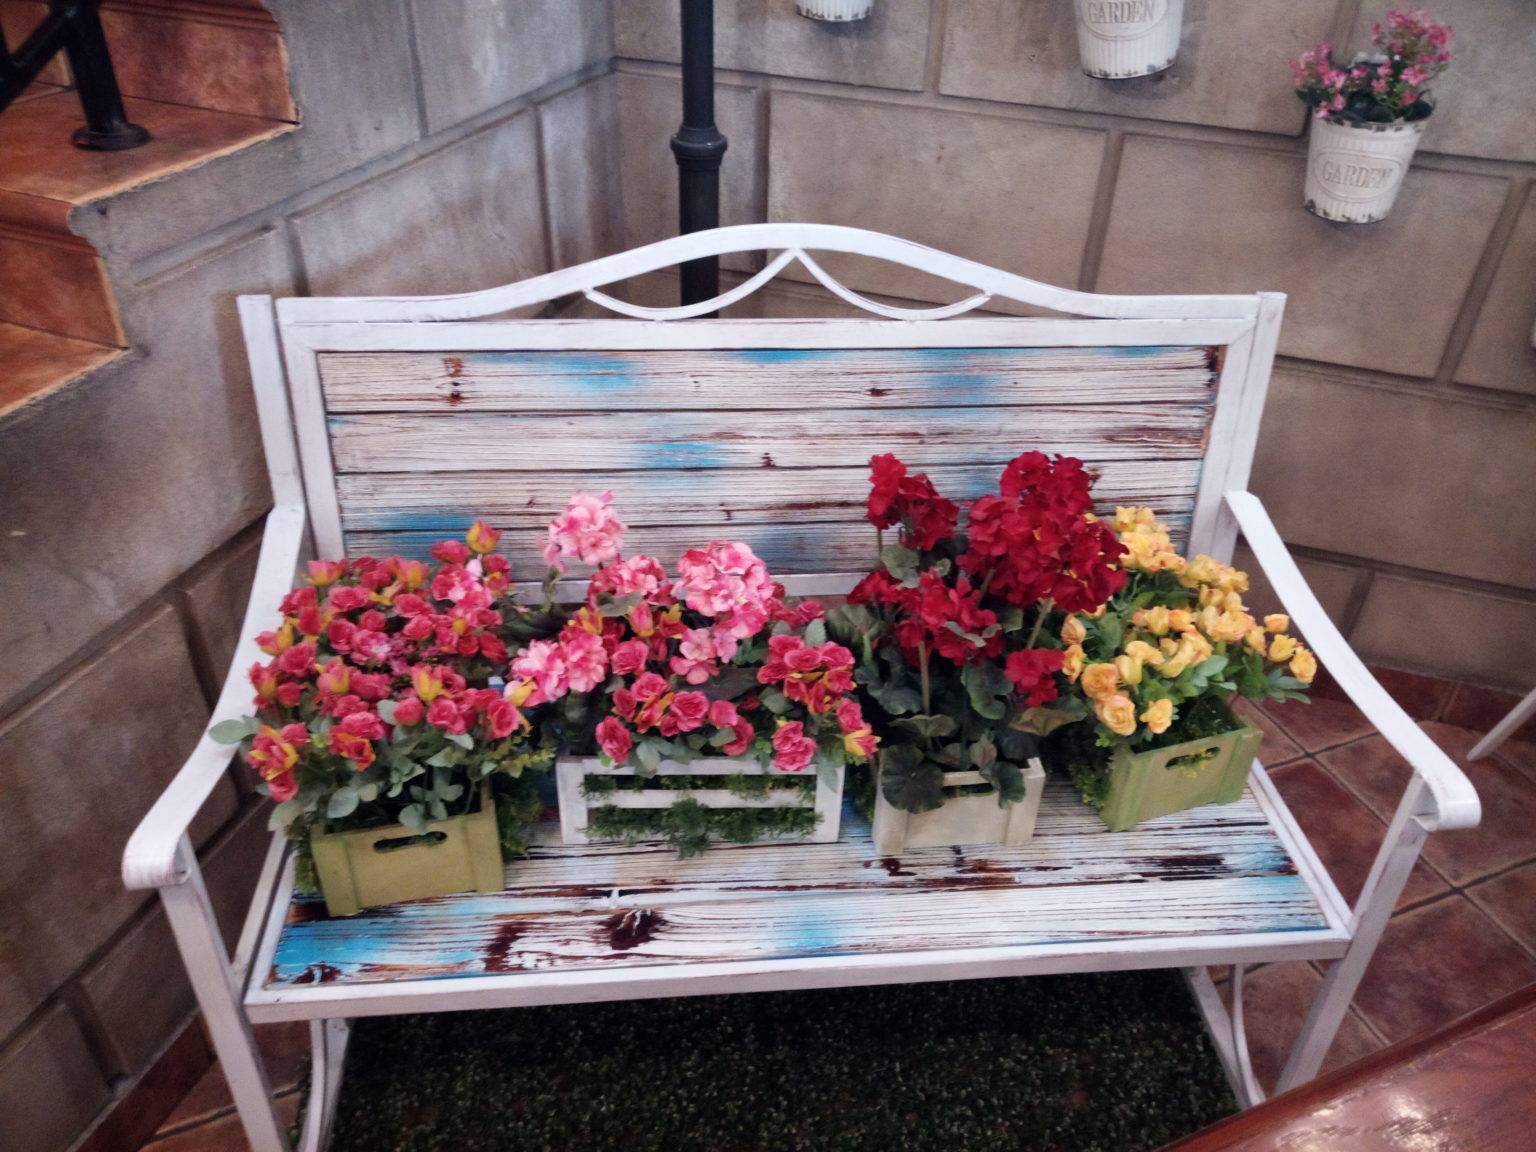 Ai bảo băng ghế dài chỉ dùng để ngồi? Nếu chúng ta biến nó thành nơi để trưng bày những chậu hoa đủ sắc màu thì 'thềm nhà có hoa' duyên dáng rồi đúng không nào? Bạn có thể sơn lại băng ghế hoặc giữ nguyên màu cũ để tạo nét đẹp thô sơ đều được.